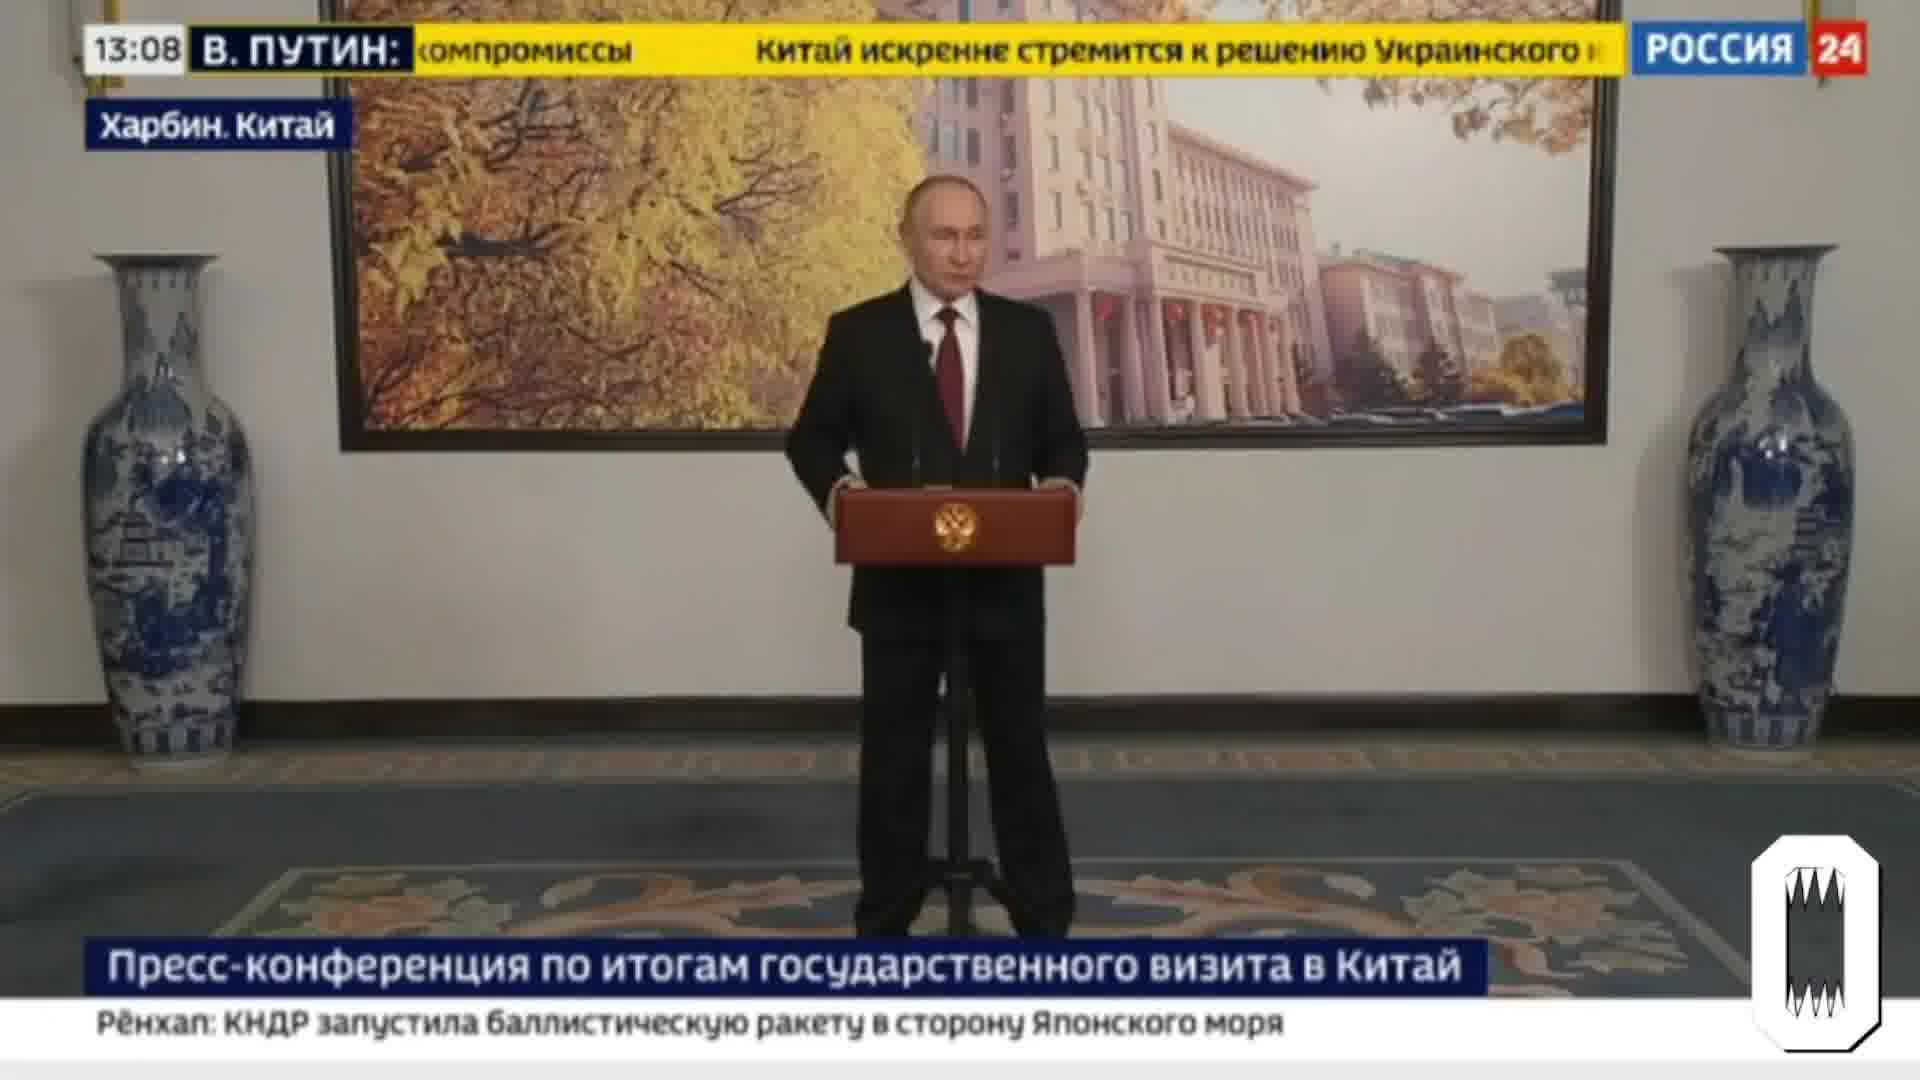 Poutine affirme que l'armée russe n'a pas l'ordre de prendre Kharkiv et que les troupes créent une zone sanitaire près de la frontière